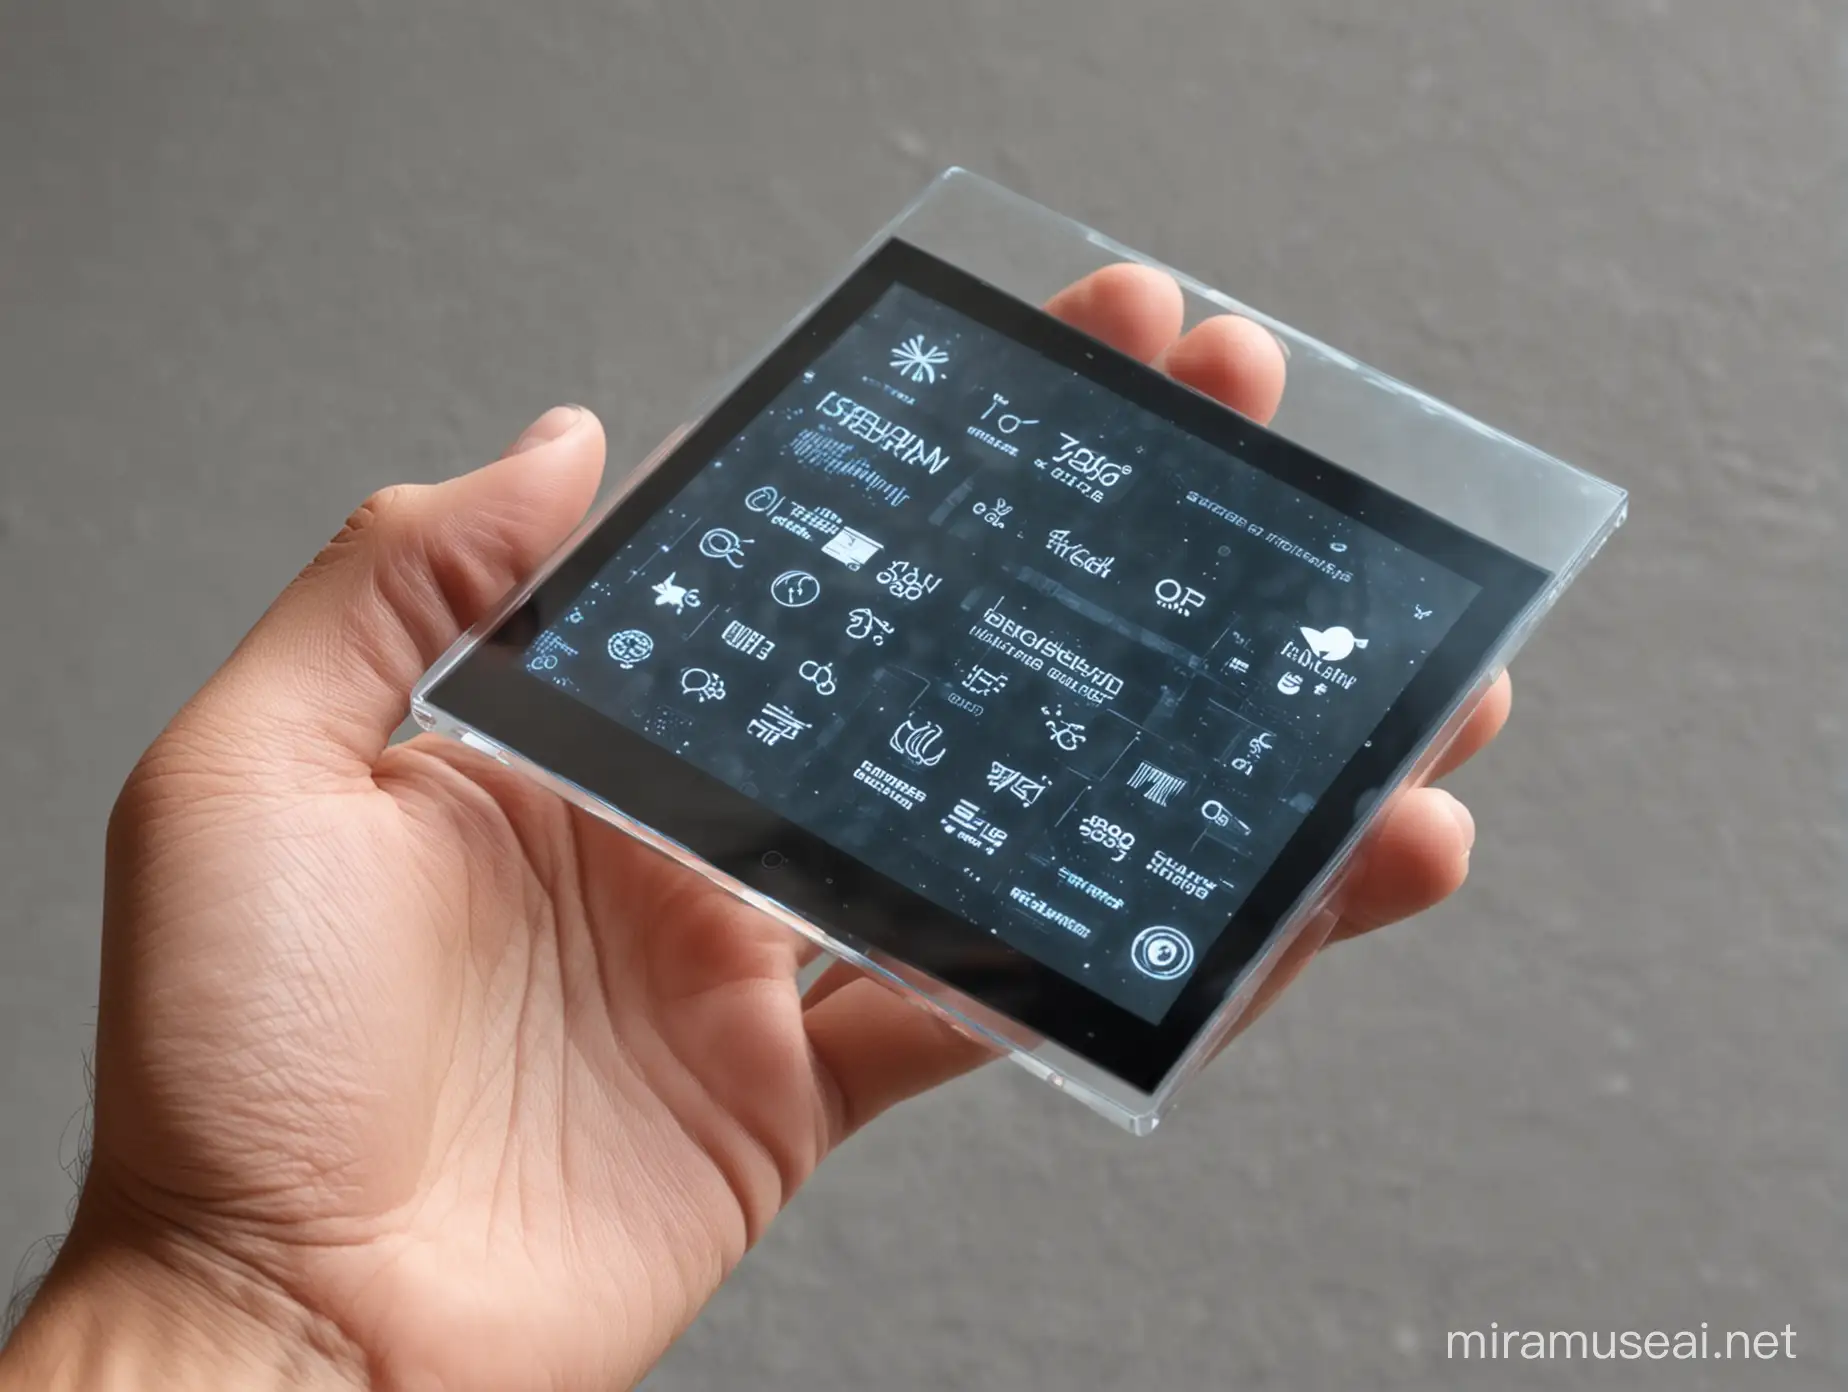 Futuristic Transparent Touchscreen Interface HighTech Technology Concept